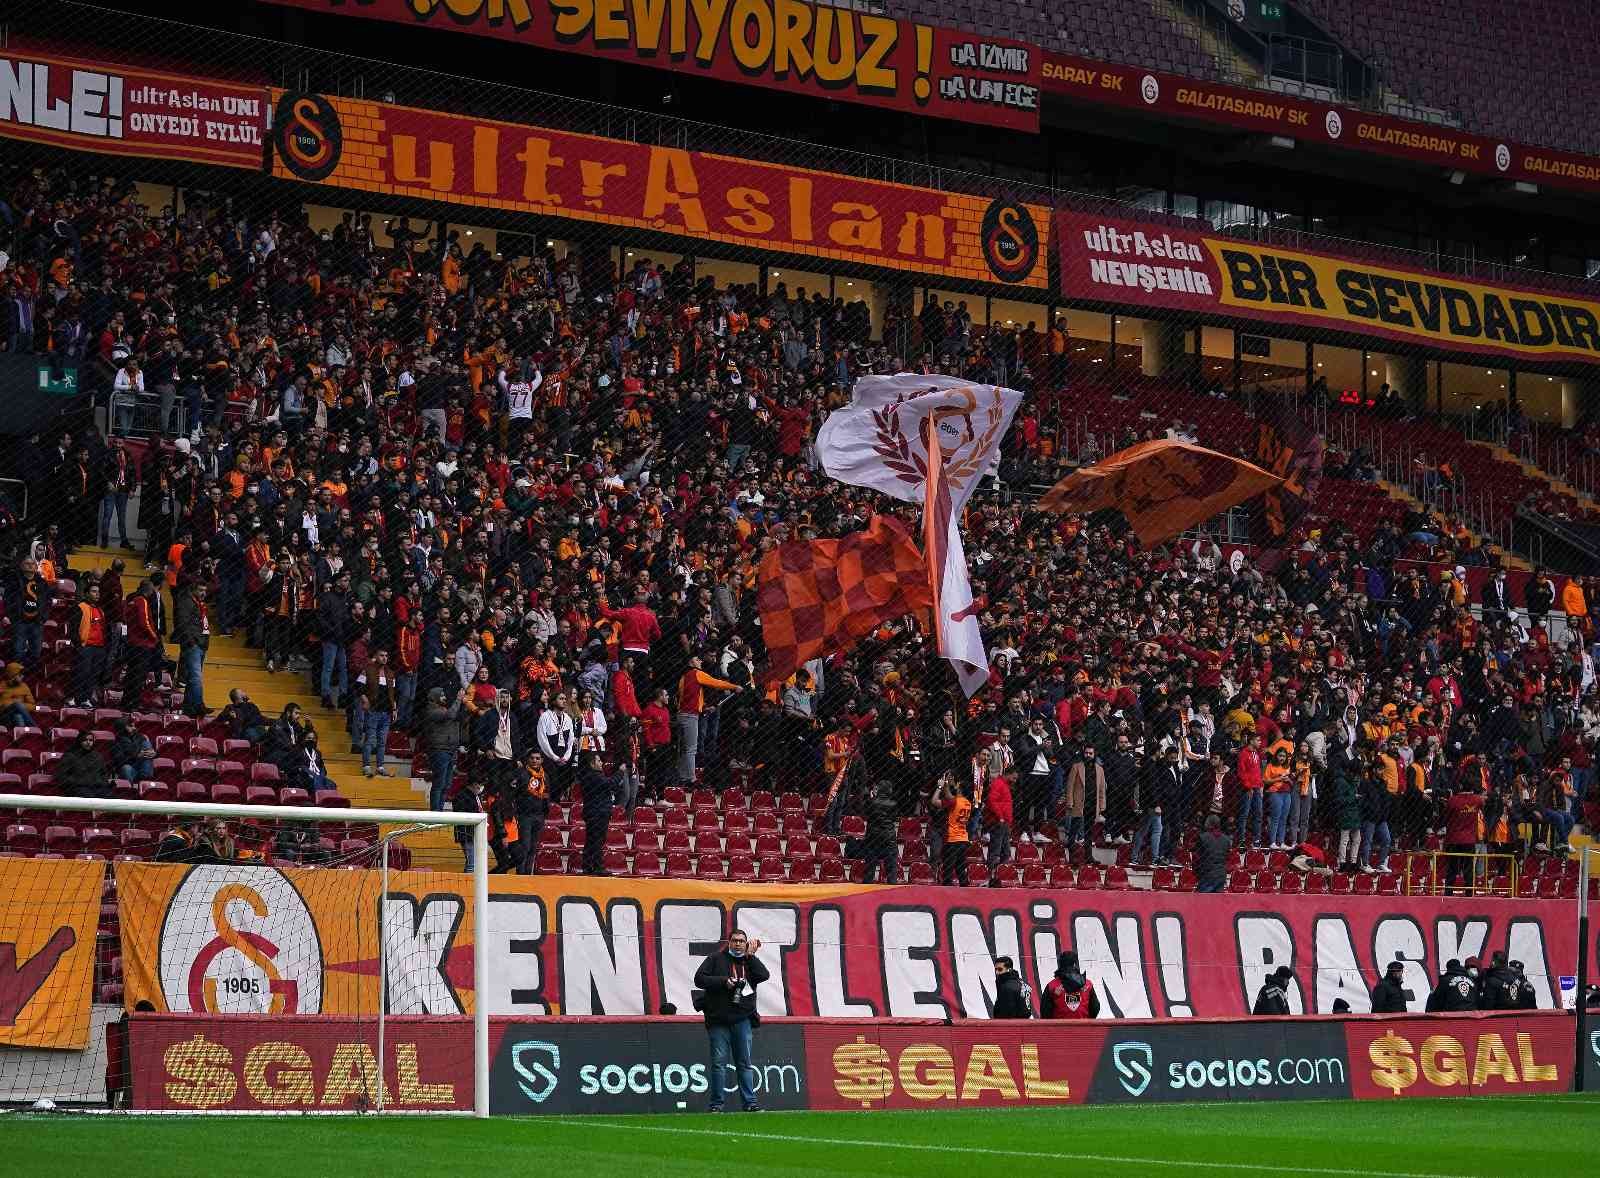 Galatasaray, Beşiktaş derbisi son idmanını taraftara açık yaptı #istanbul